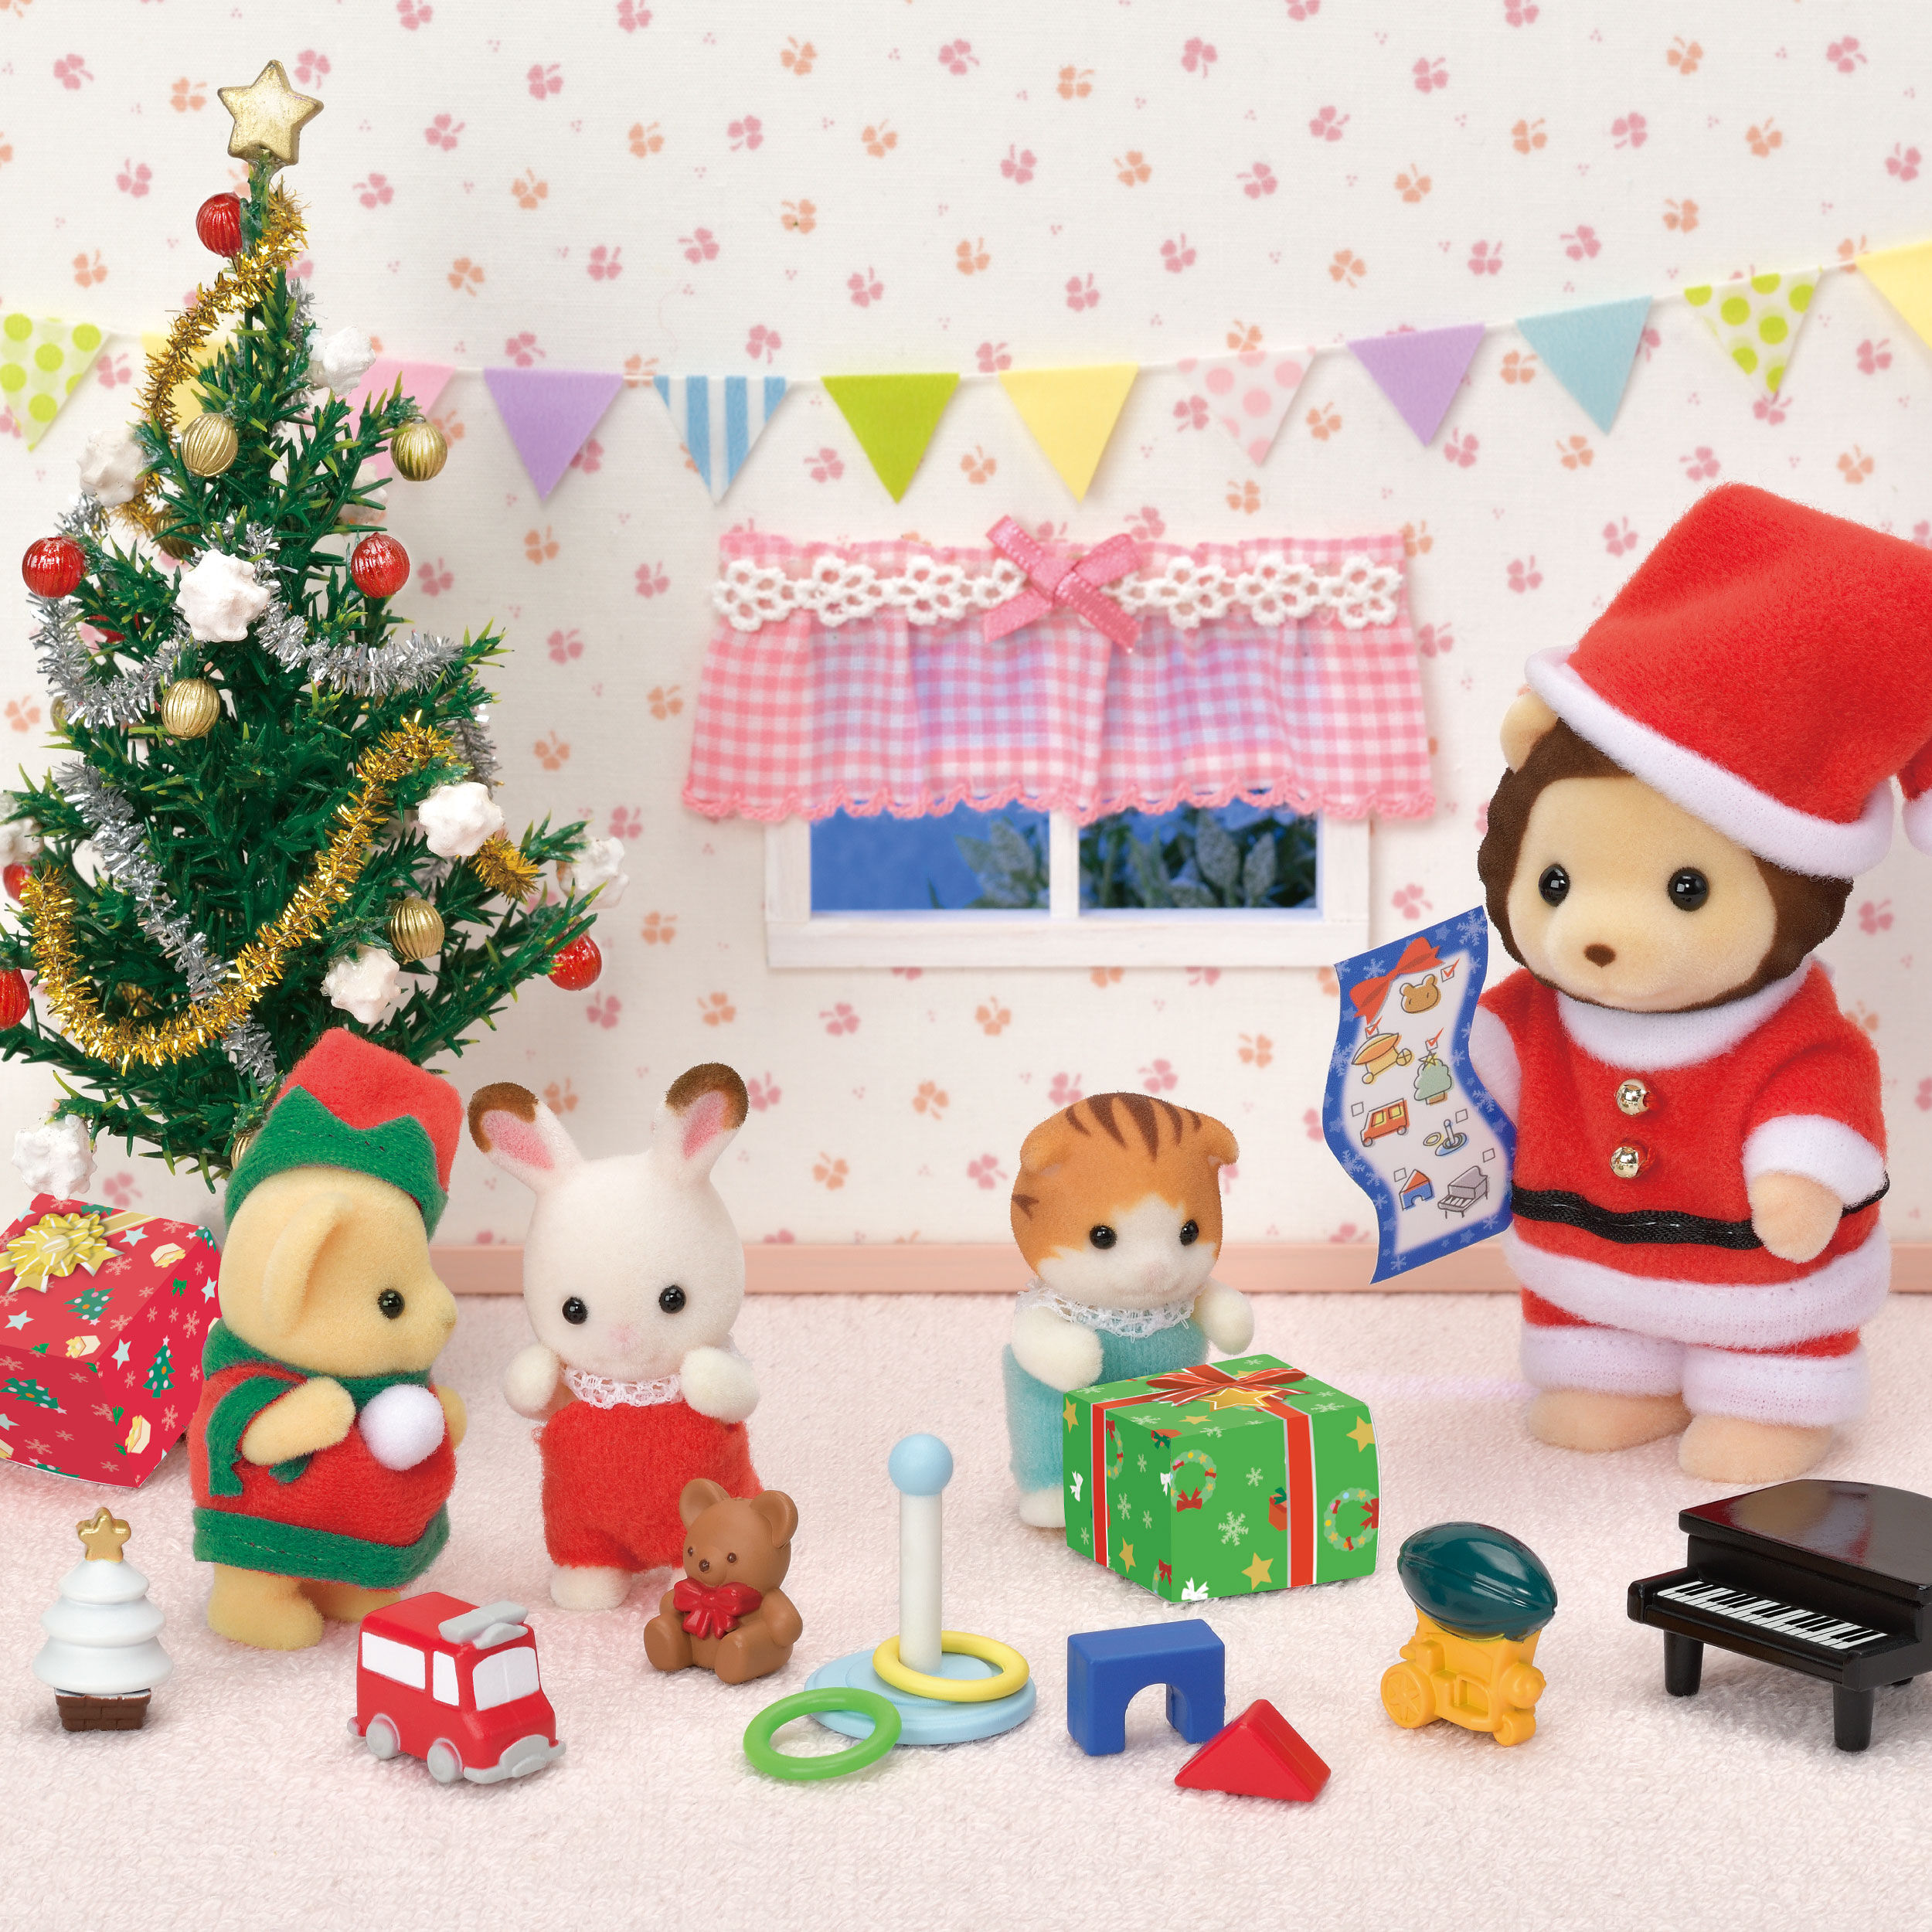 ライオンサンタのクリスマスセット / 家具と人形セット - シルバニア